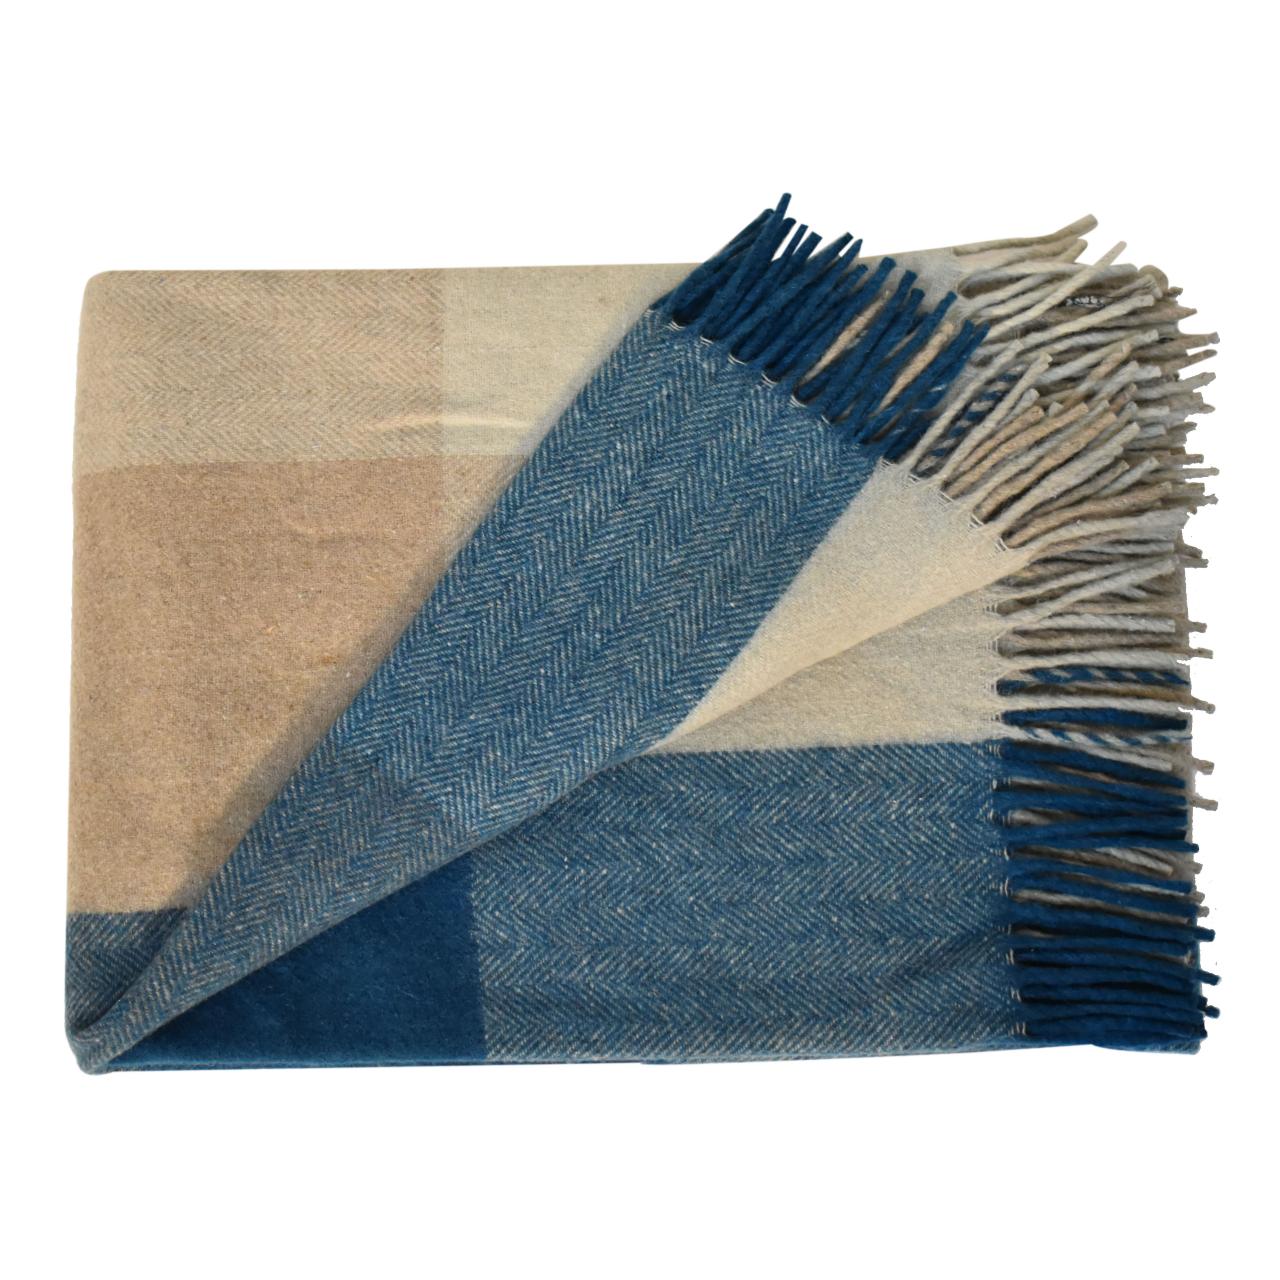 Selin blauer Wollüberwurf (Queen-Size-Größe 150 x 180 cm)